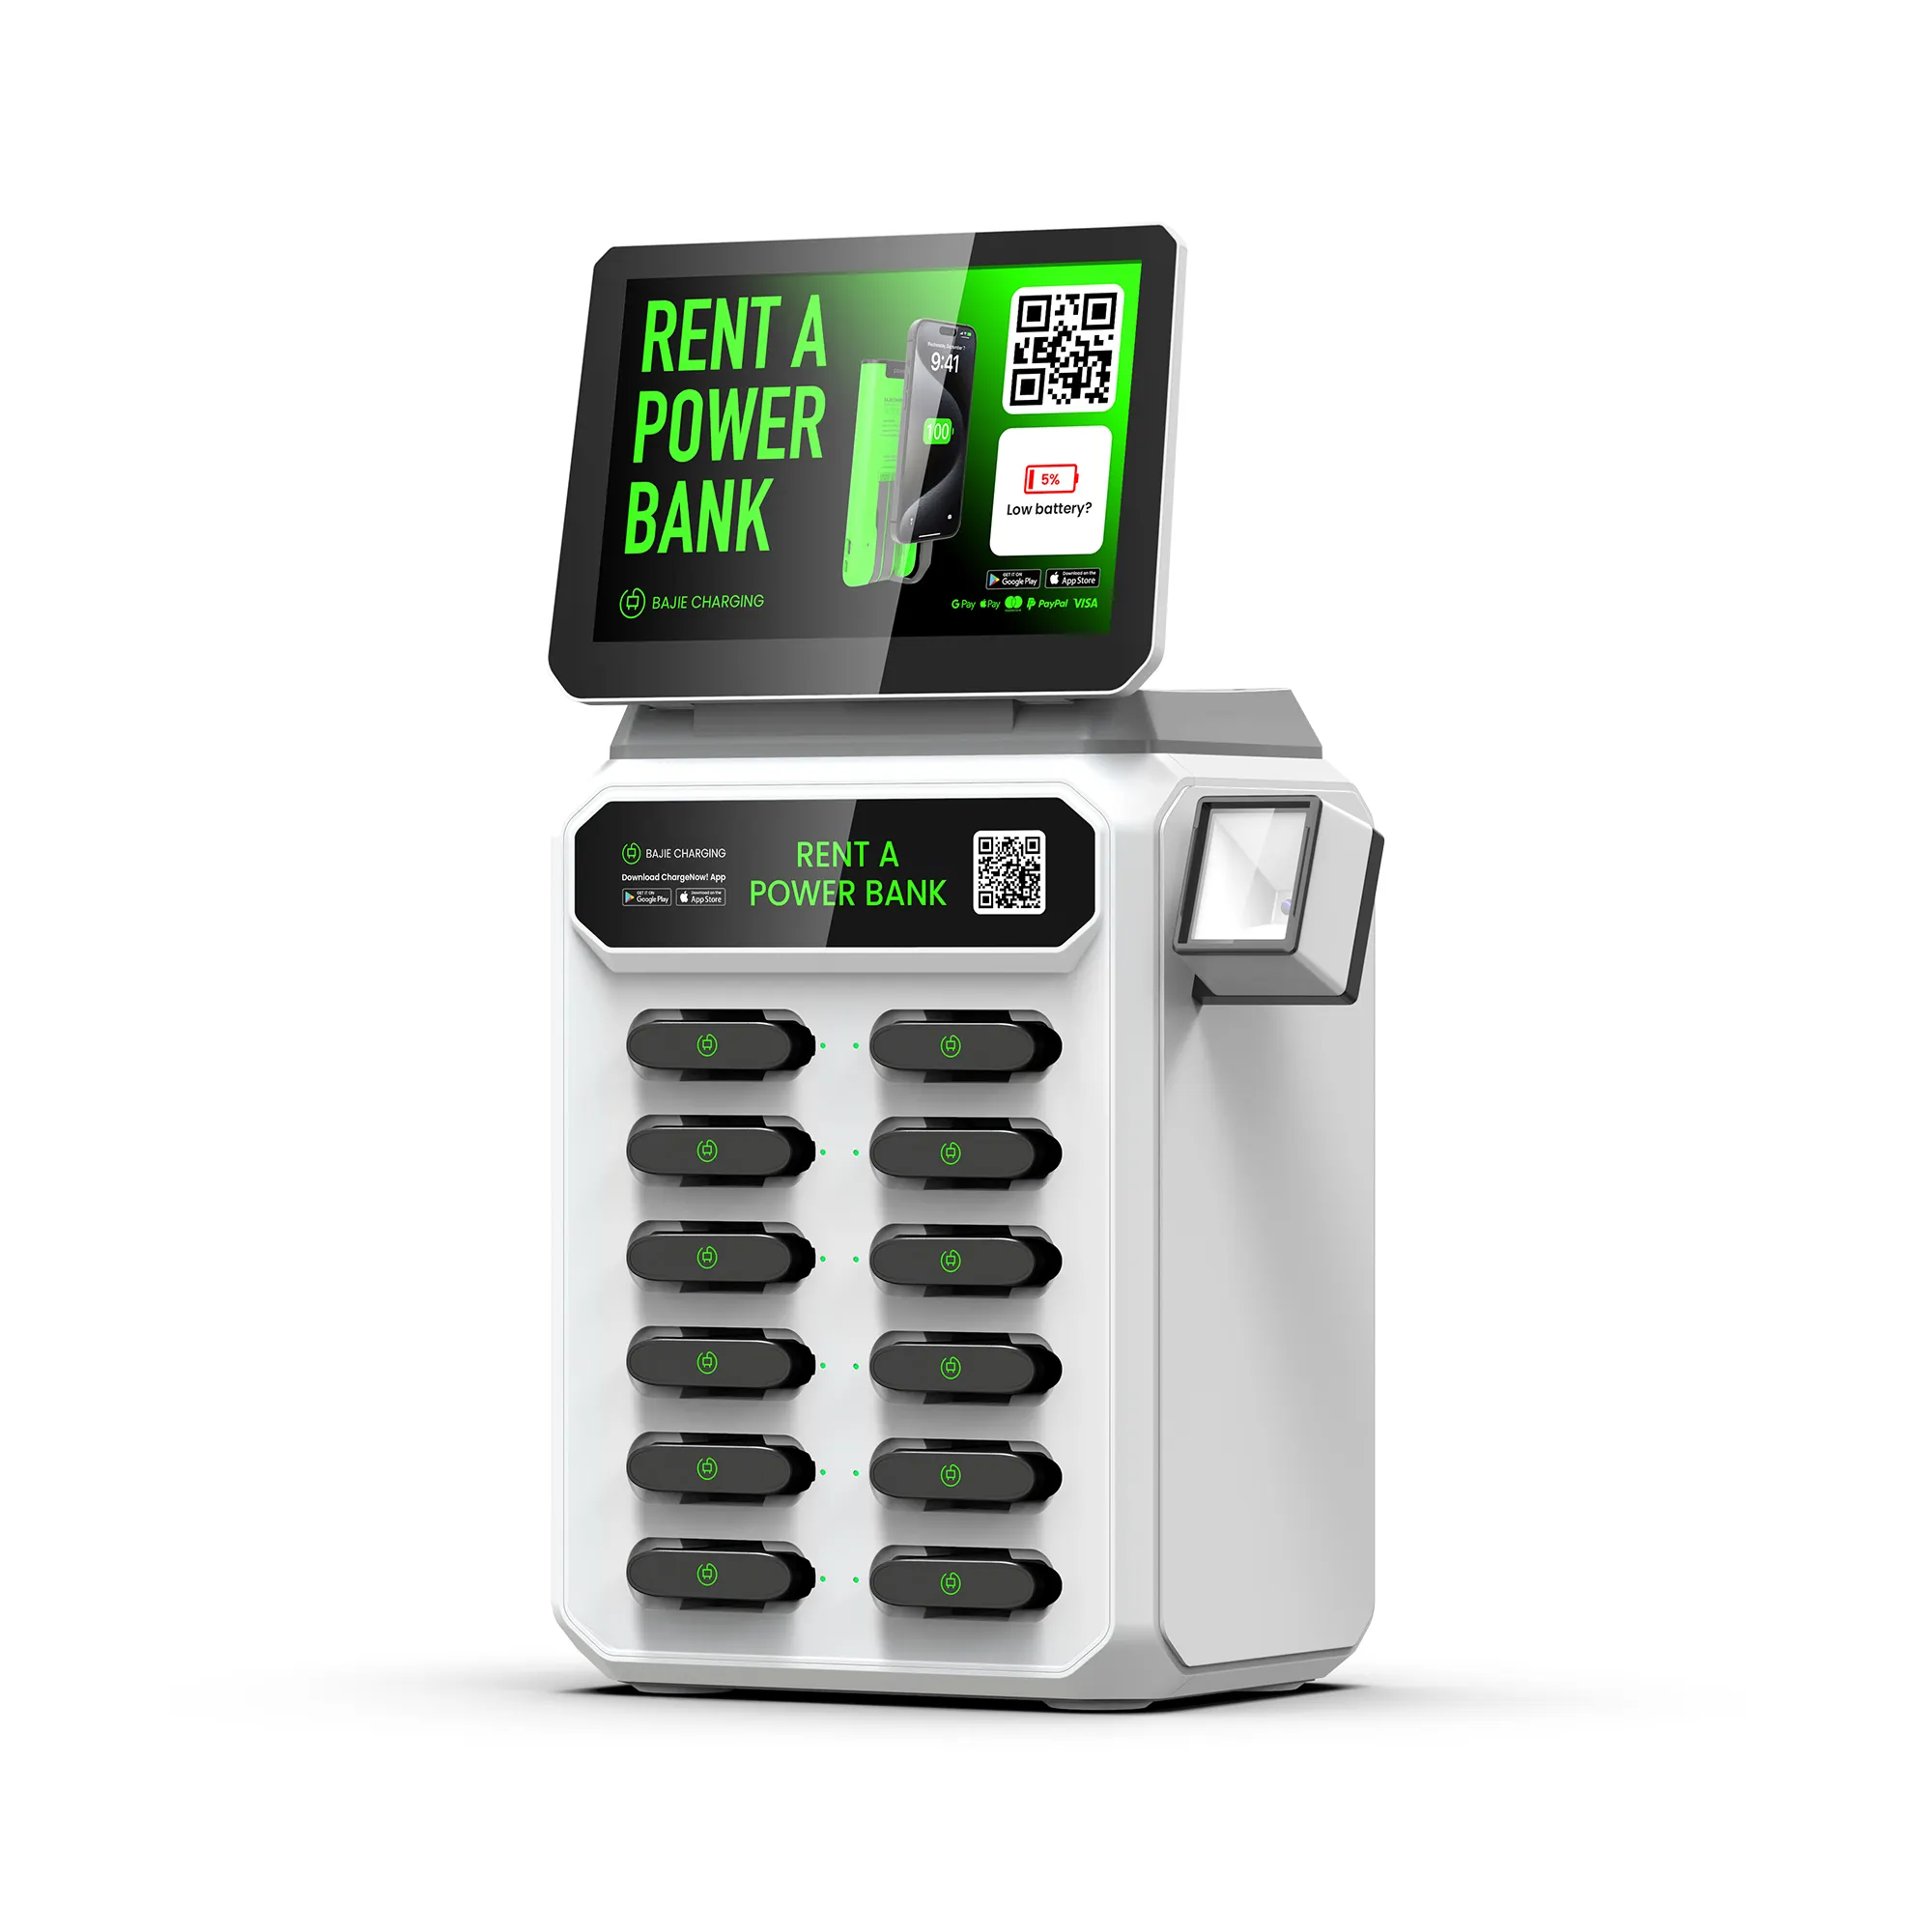 12 emplacements partagent la station de location de banque d'alimentation avec écran et lecteur de point de vente personnalisable le moyen le plus simple de louer la batterie,